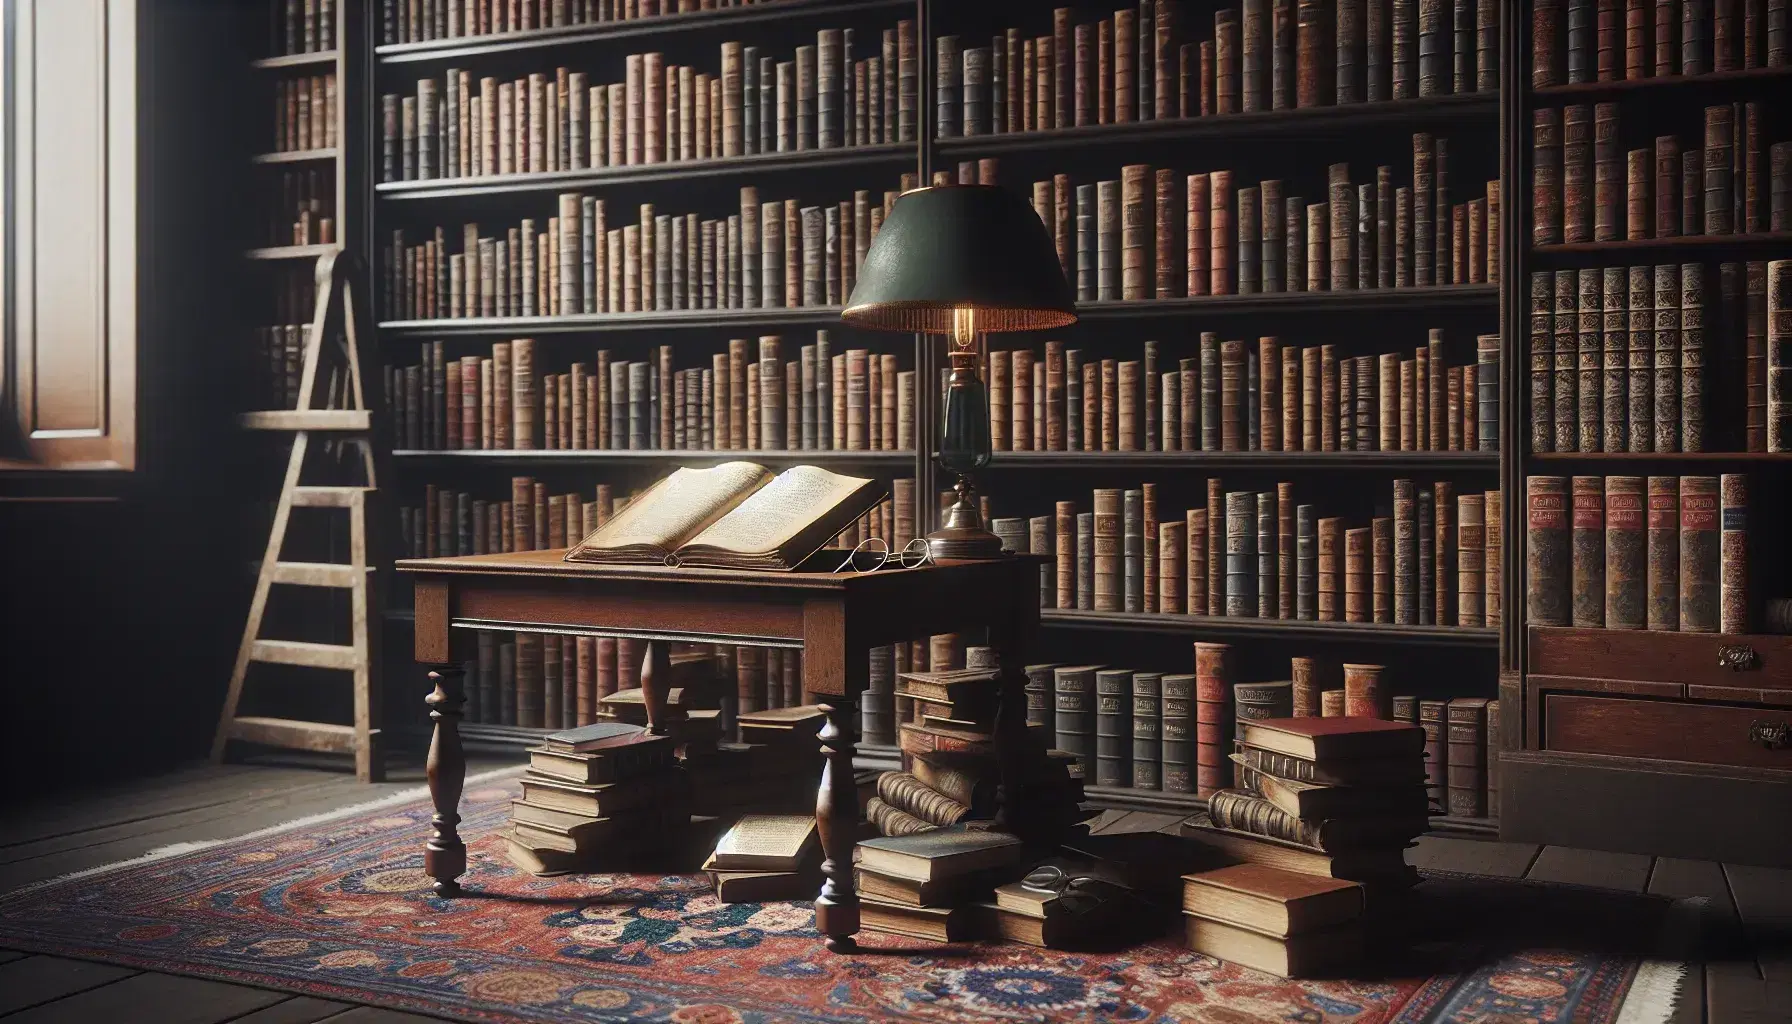 Biblioteca antigua con estantes de madera oscura llenos de libros, mesa con libro abierto, gafas y lámpara verde, y escalera junto a alfombra persa.